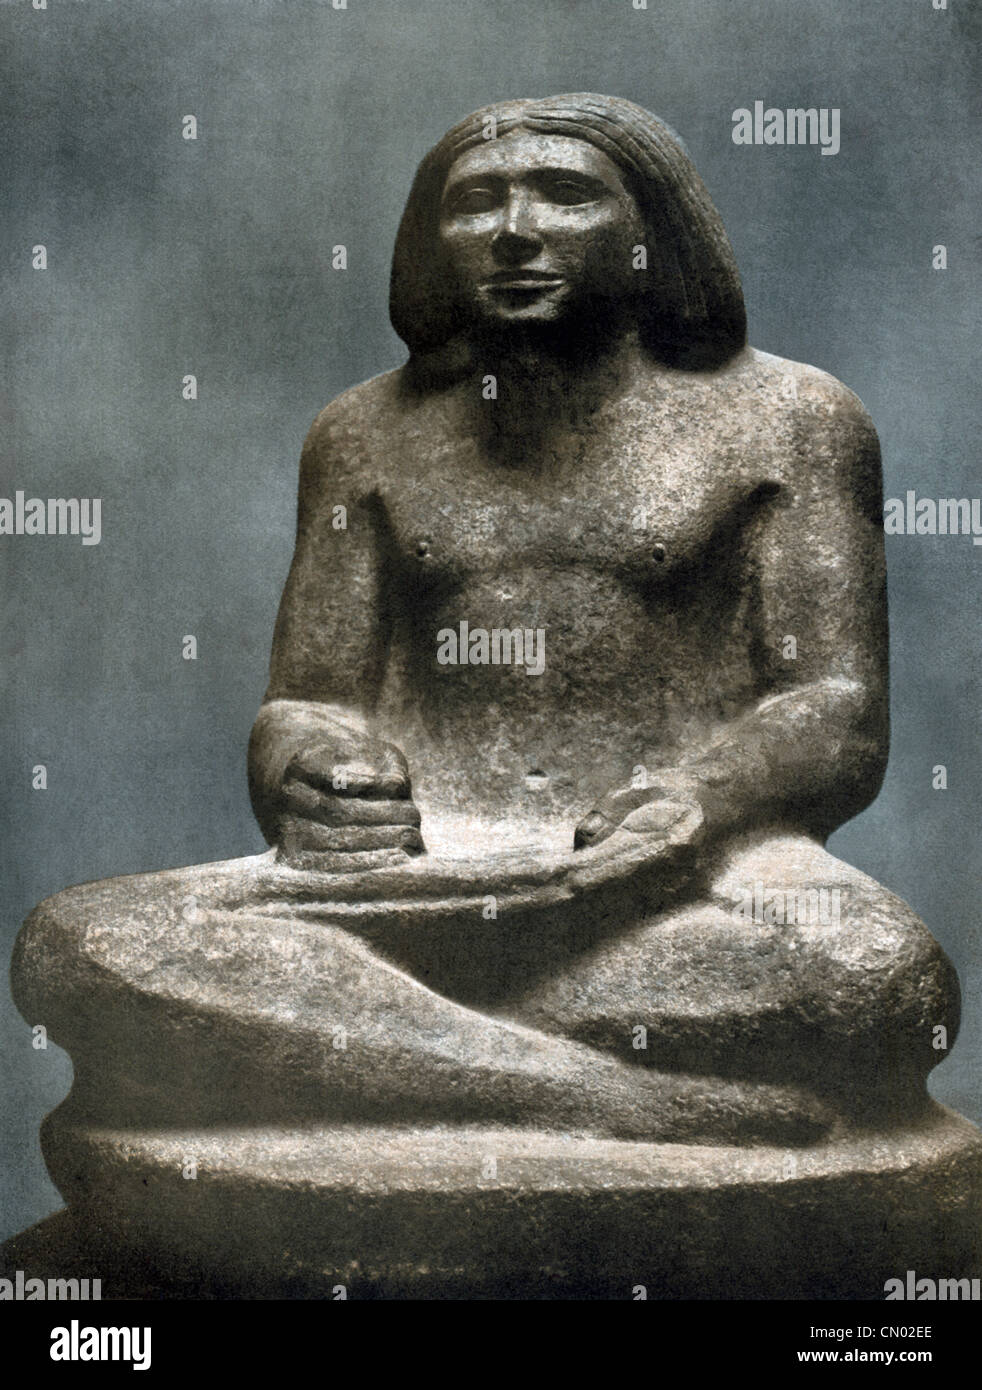 La IV dinastia scribe Dersenez vissuto intorno al 2750 A.C. Questa statua di lui è stato scolpito da granito rosso e scoperte a Giza. Foto Stock